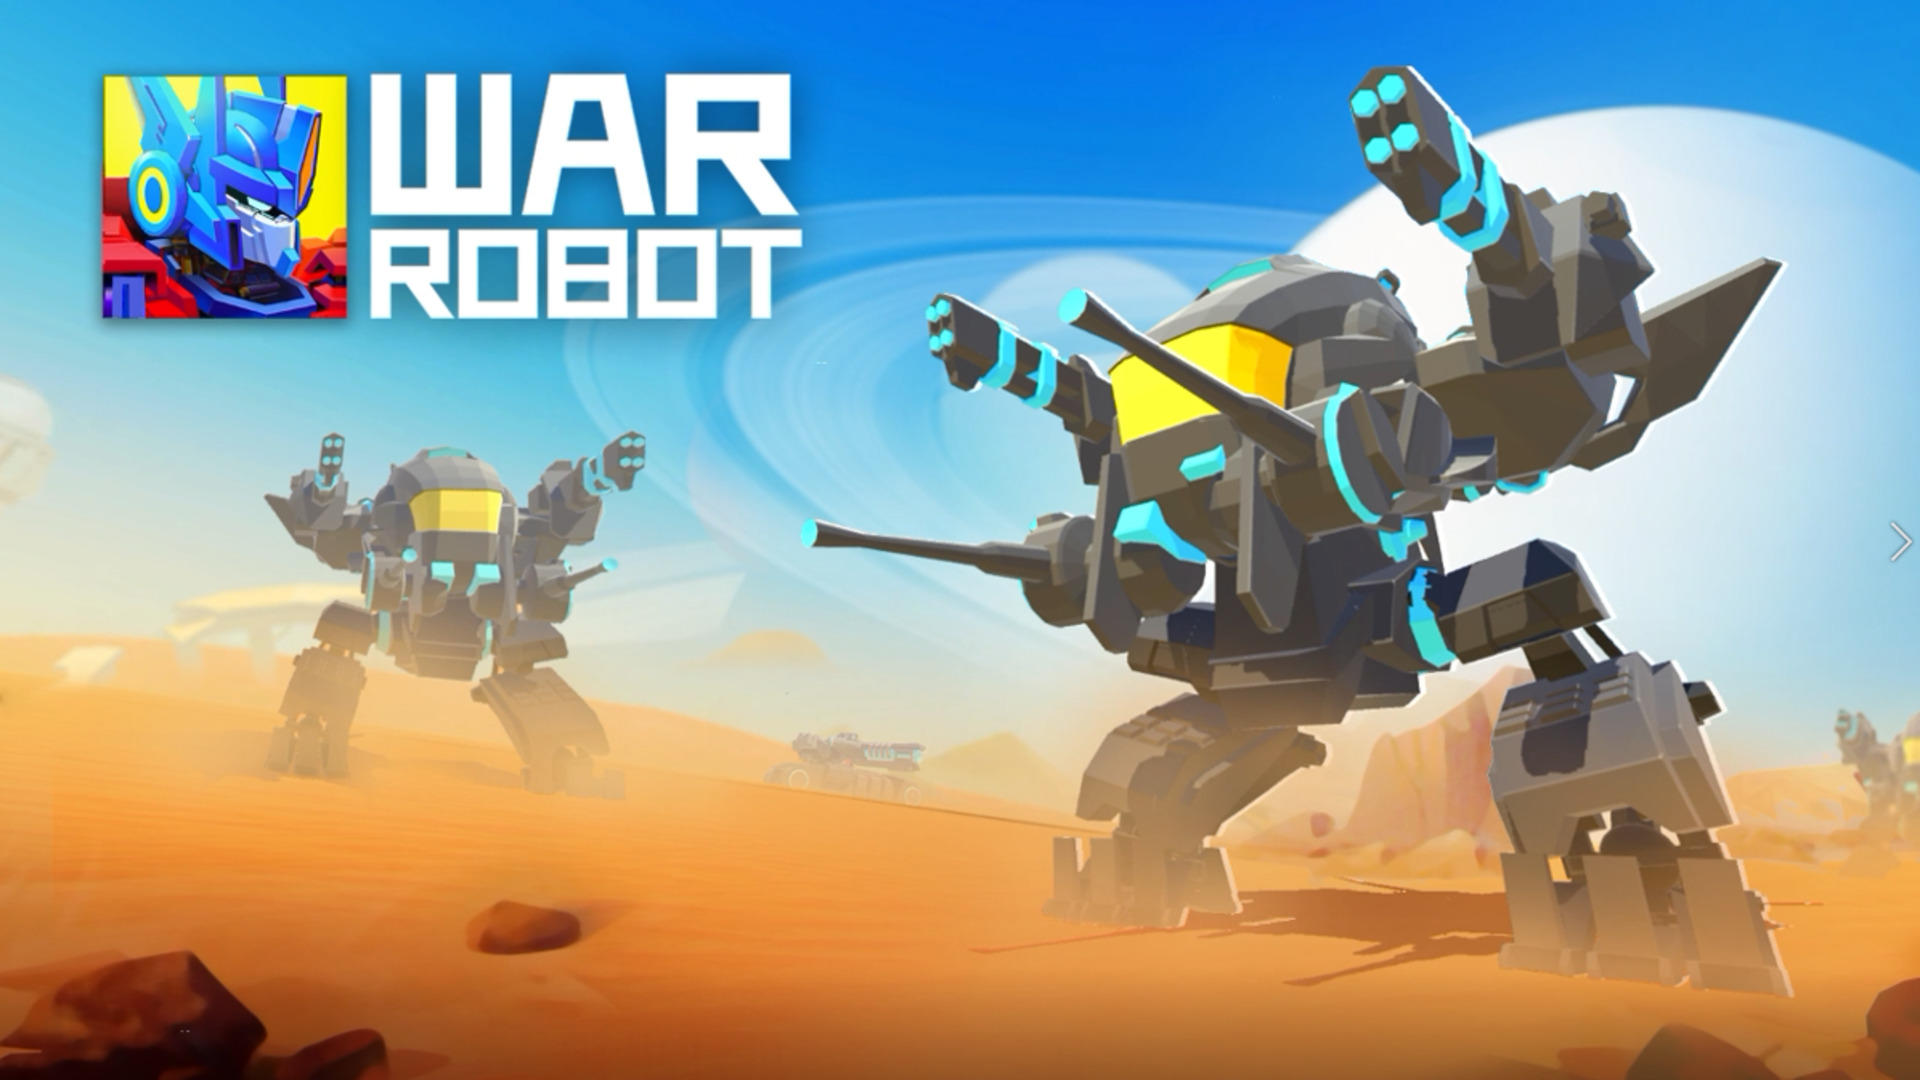 Banner of Война роботов: современный боевой шутер от первого лица 1.6